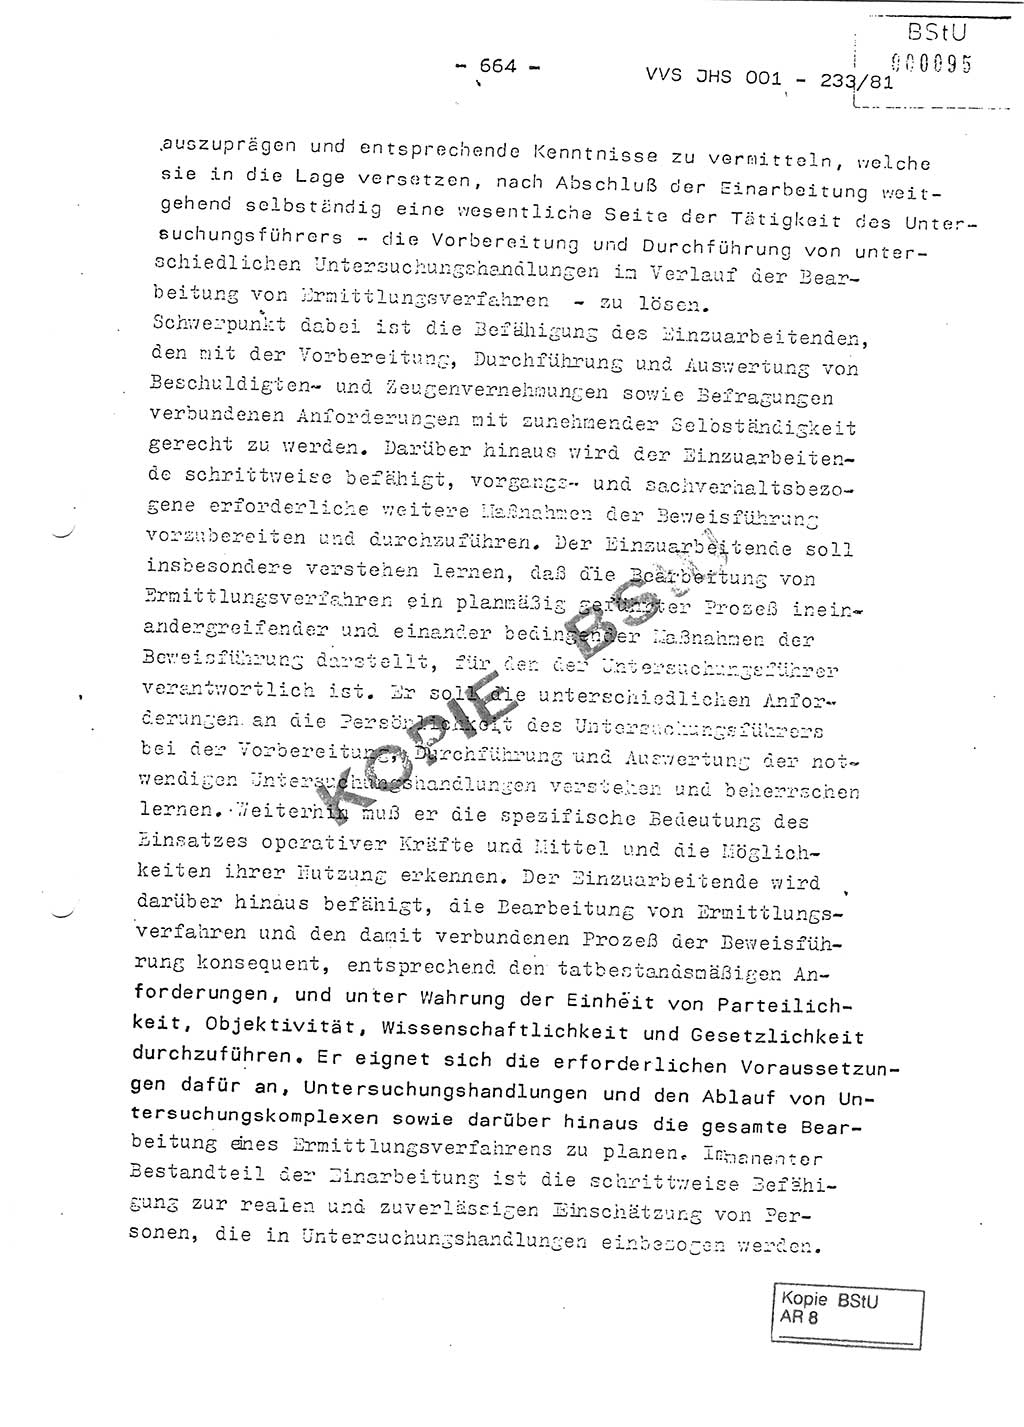 Dissertation Oberstleutnant Horst Zank (JHS), Oberstleutnant Dr. Karl-Heinz Knoblauch (JHS), Oberstleutnant Gustav-Adolf Kowalewski (HA Ⅸ), Oberstleutnant Wolfgang Plötner (HA Ⅸ), Ministerium für Staatssicherheit (MfS) [Deutsche Demokratische Republik (DDR)], Juristische Hochschule (JHS), Vertrauliche Verschlußsache (VVS) o001-233/81, Potsdam 1981, Blatt 664 (Diss. MfS DDR JHS VVS o001-233/81 1981, Bl. 664)